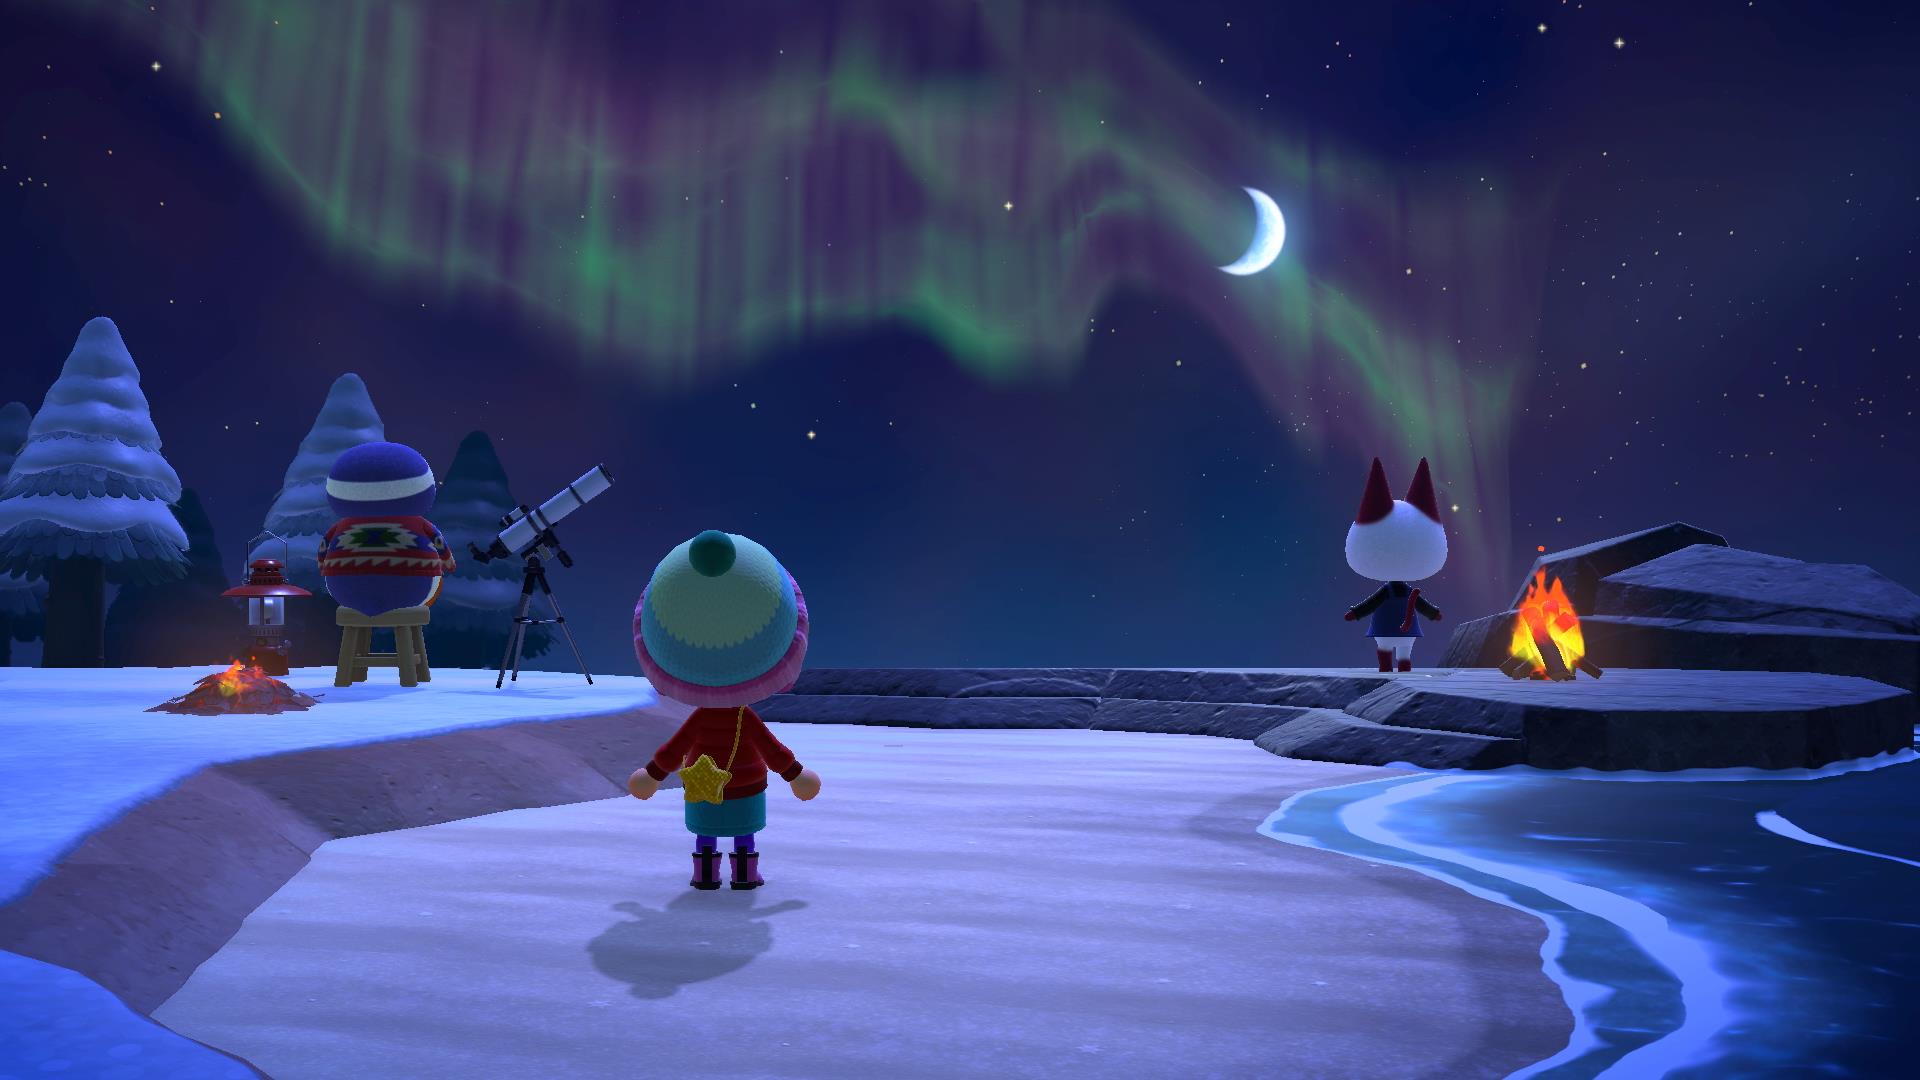 Animal Crossing: New Horizons screenshots and art